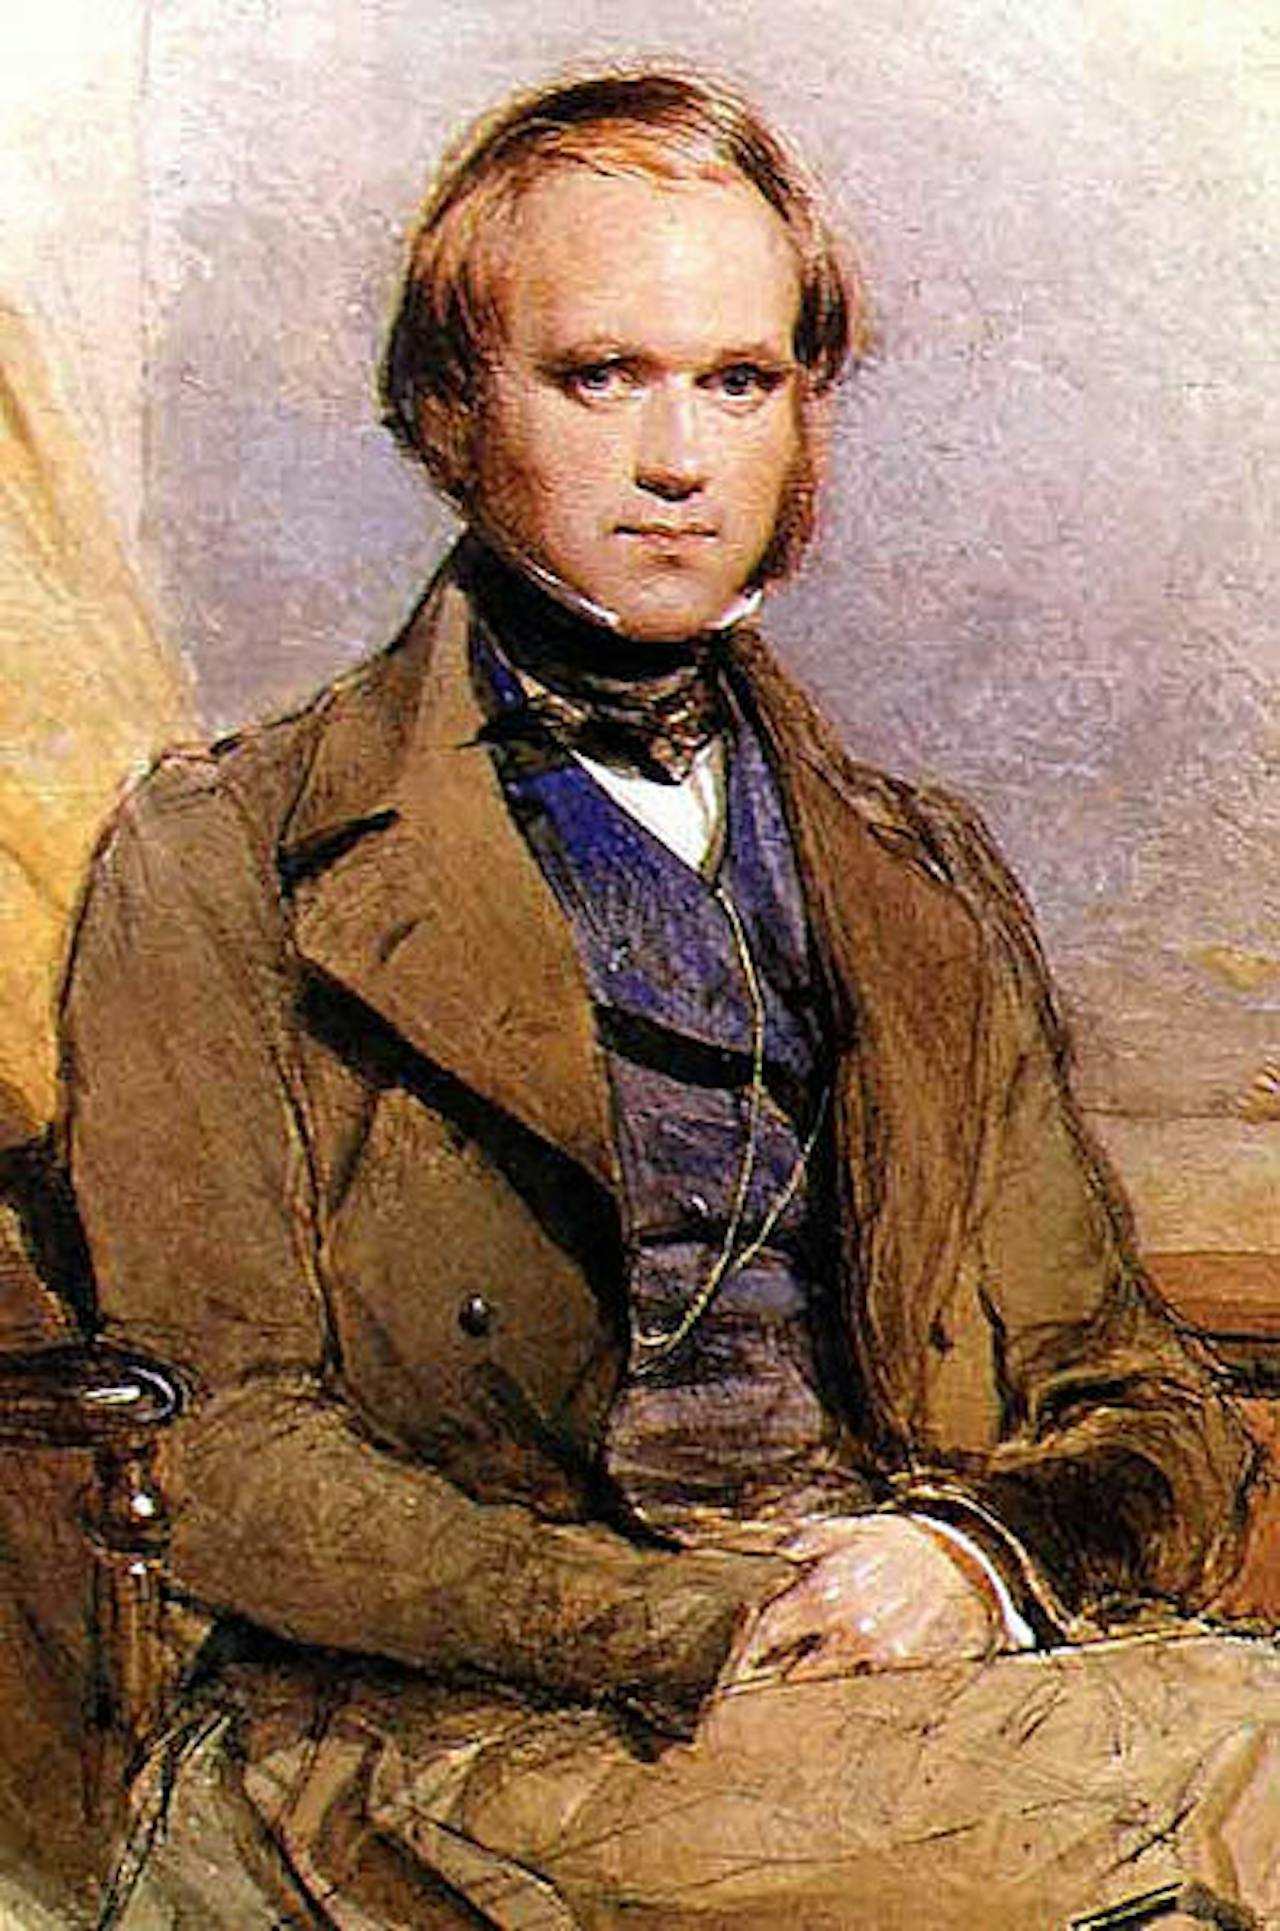 Een portret van Charles Darwin. De man zit op een stoel.